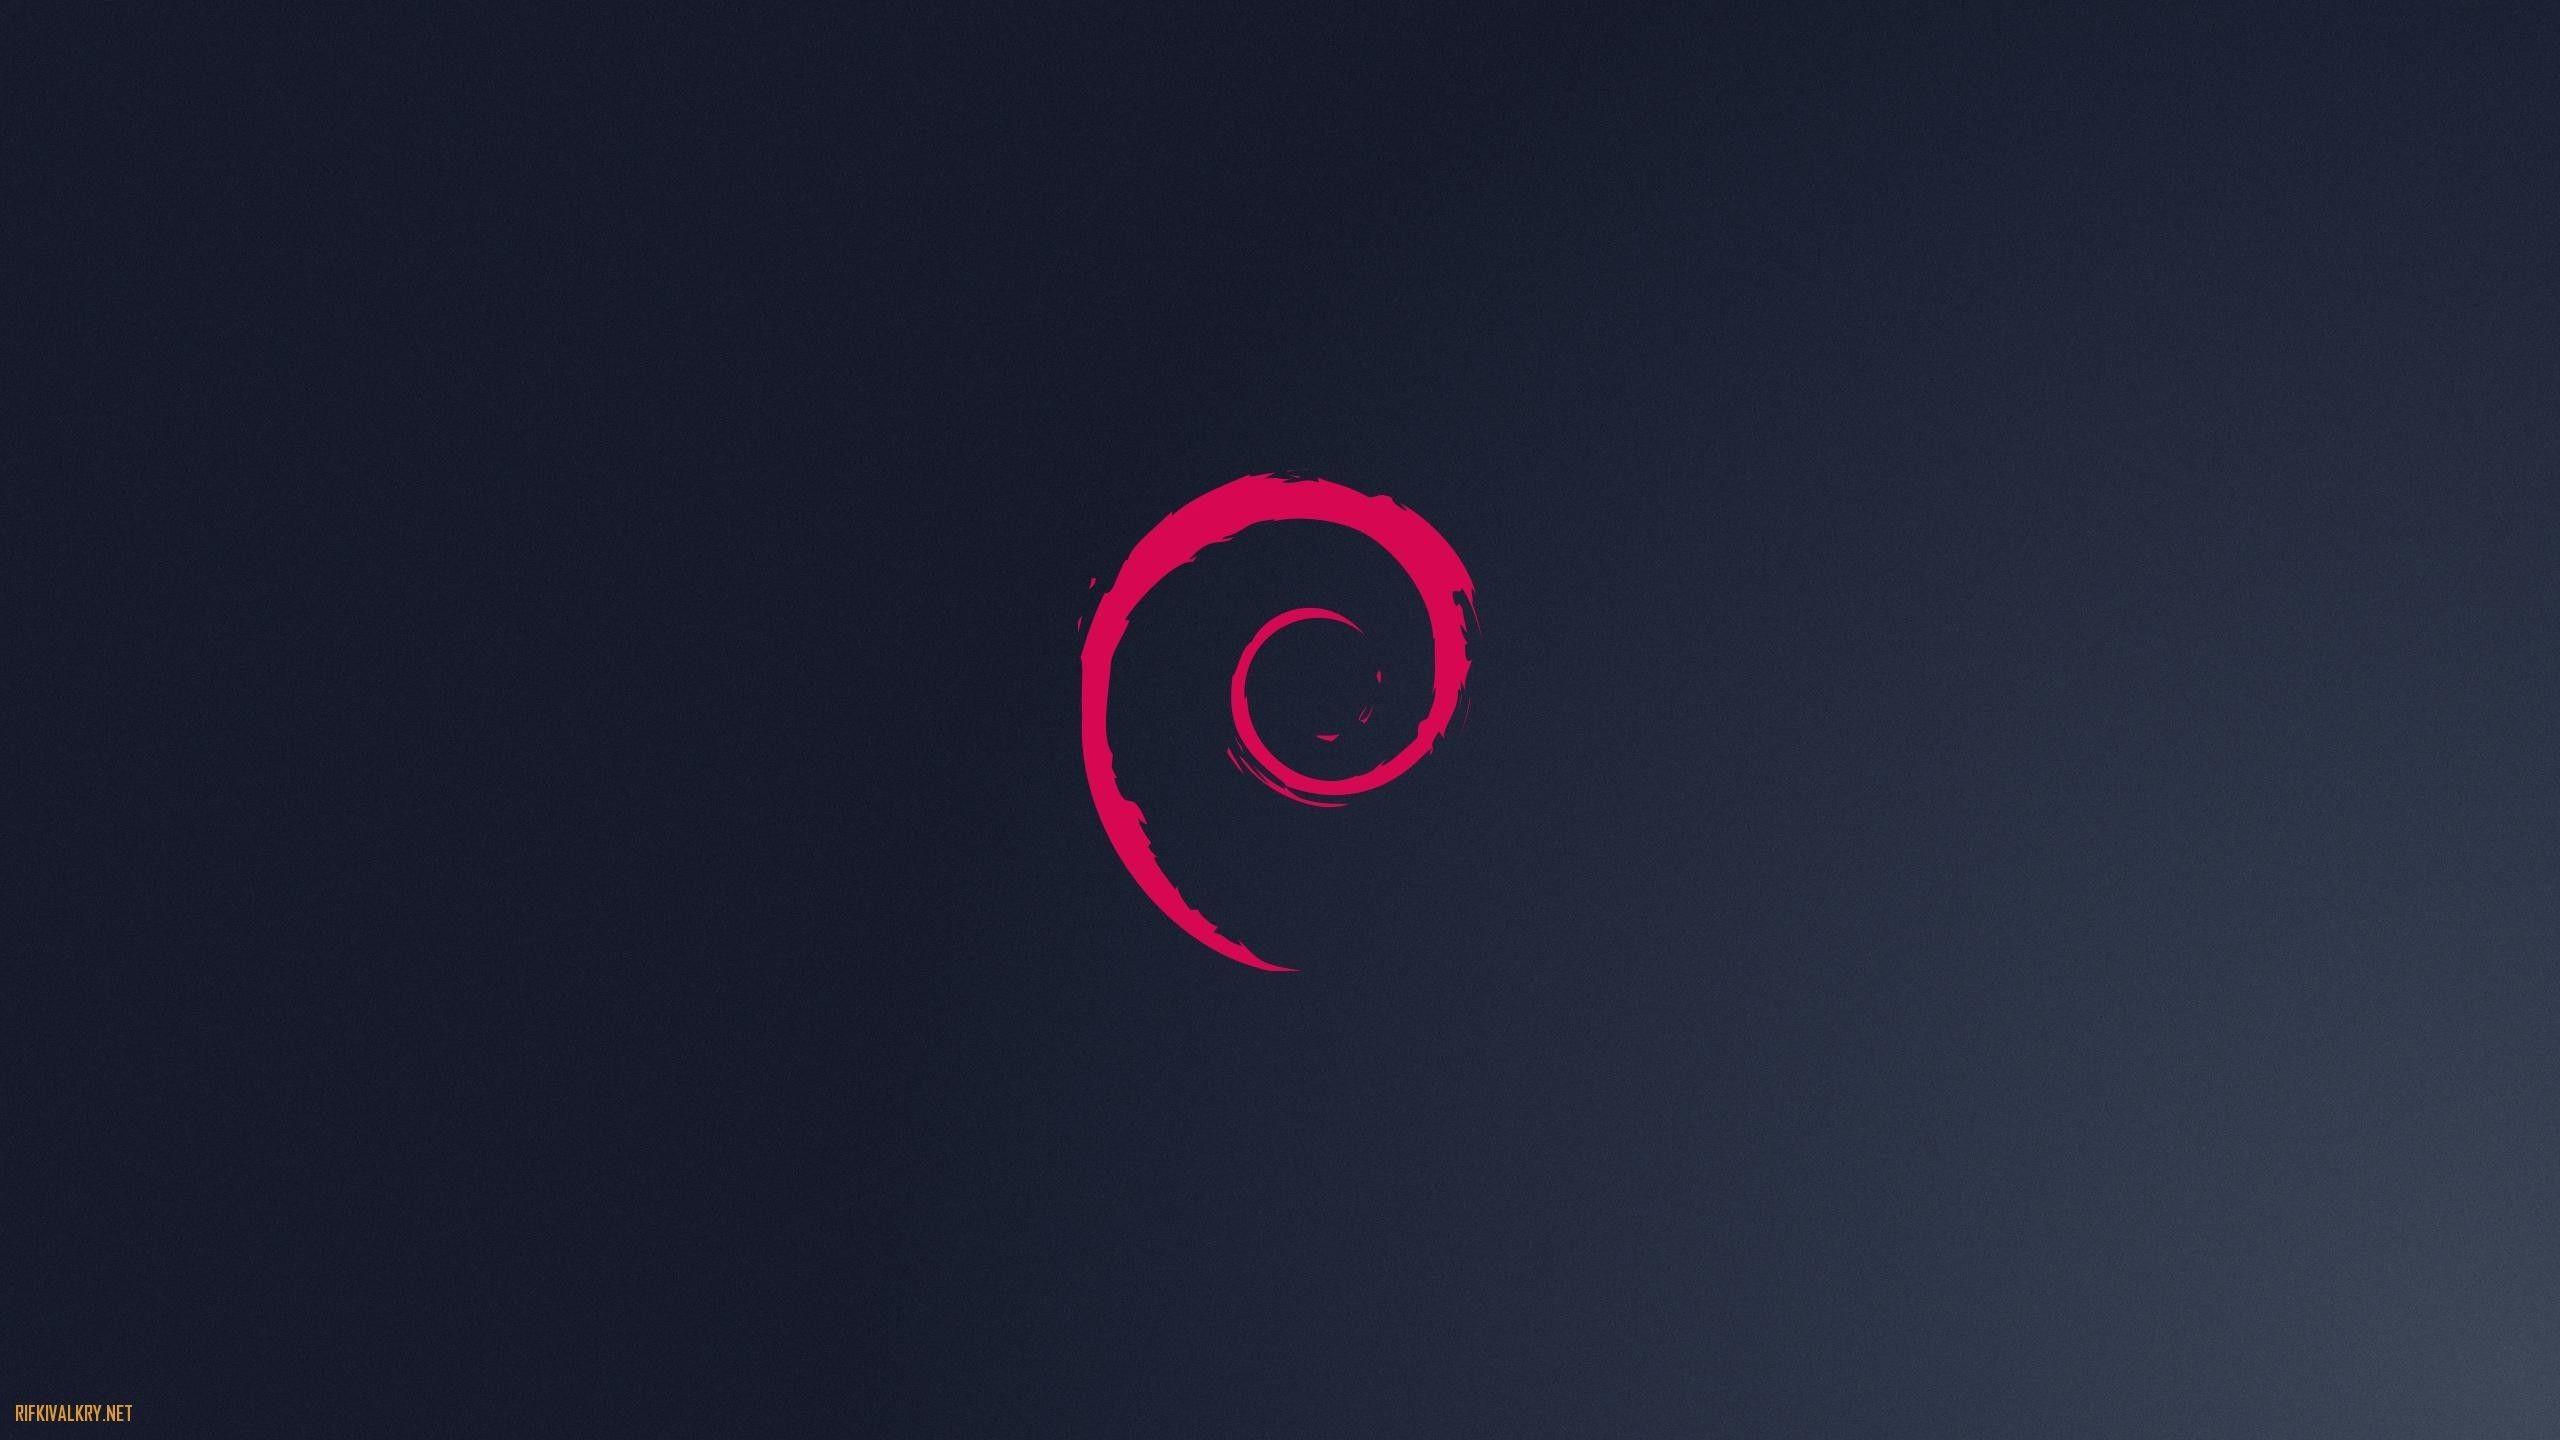 Debian Wallpapers